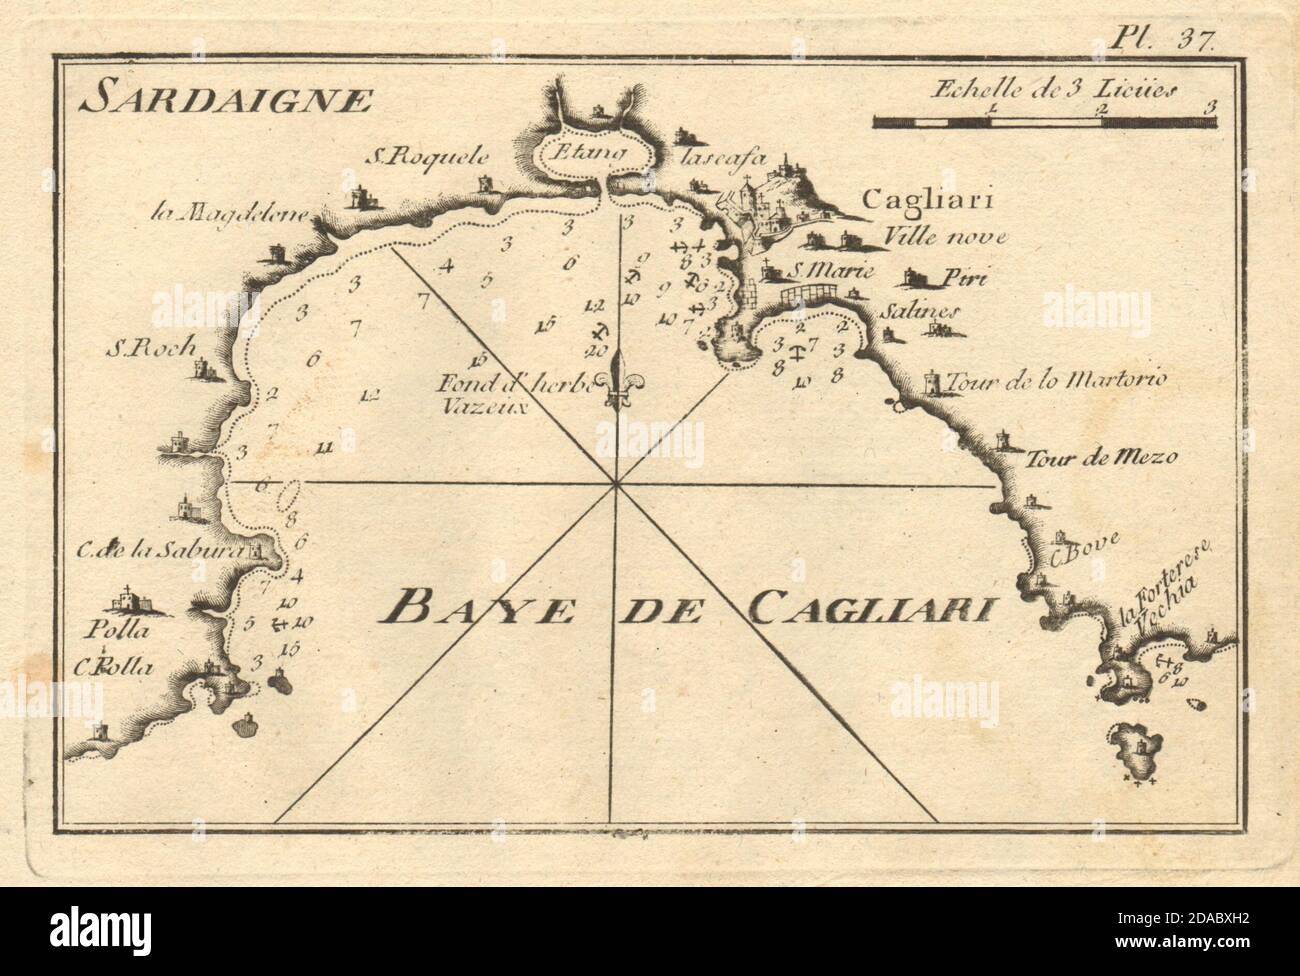 Baye de Cagliari (Sardaigne). Golfo di Cagliari, Sardegna, Italia. Mappa ROUX 1804 Foto Stock